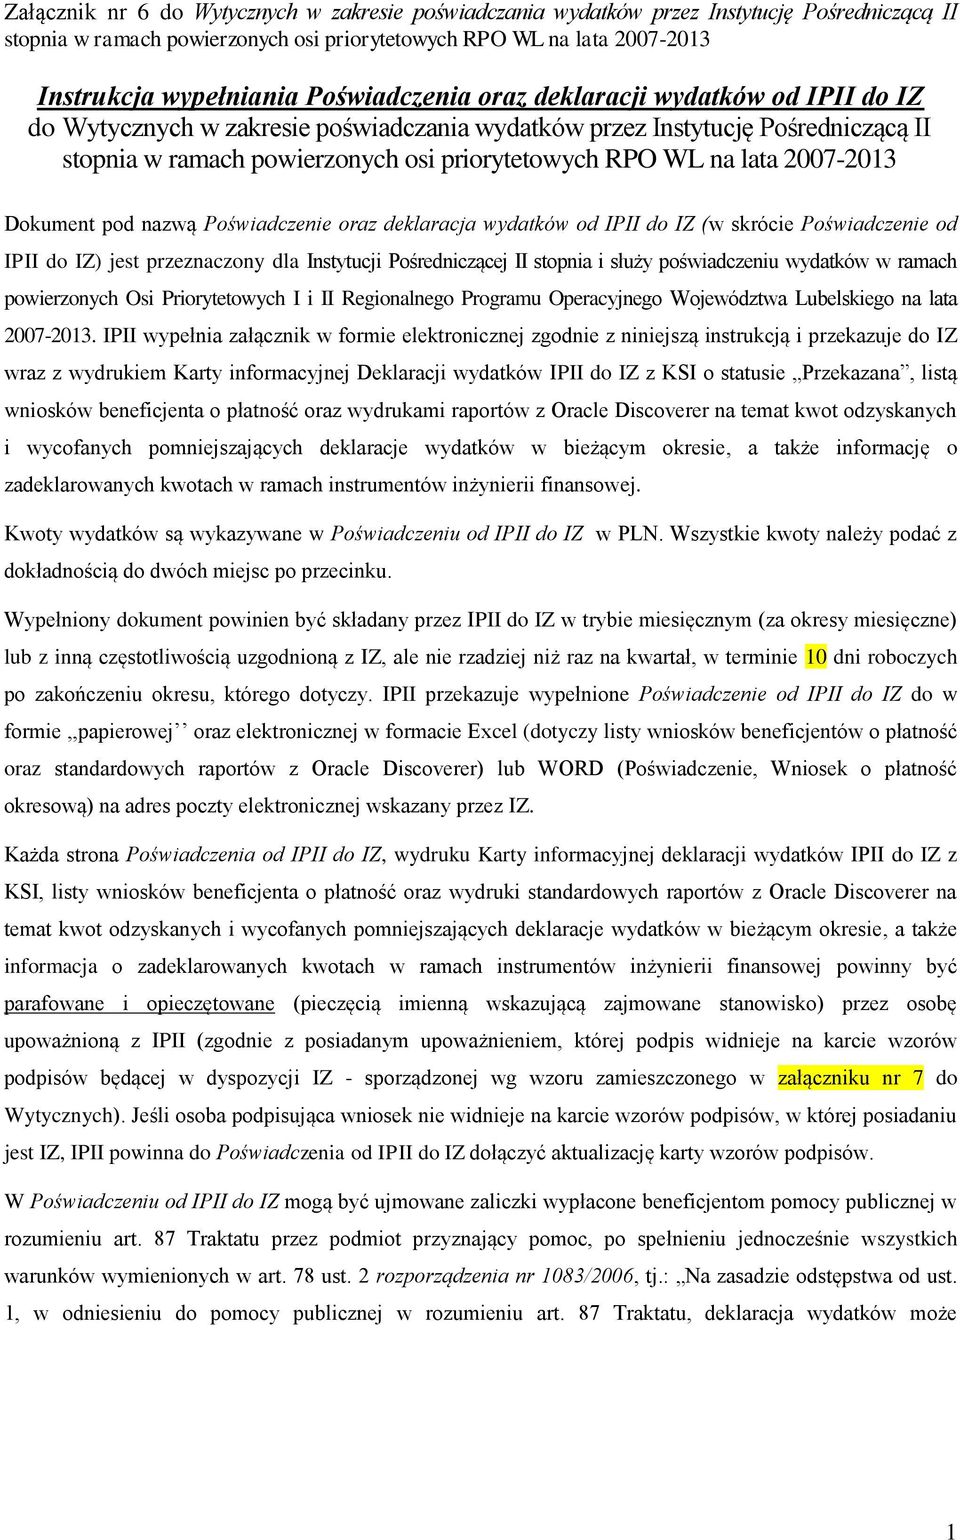 Priorytetowych I i II Regionalnego Programu Operacyjnego Województwa Lubelskiego na lata 2007-2013.